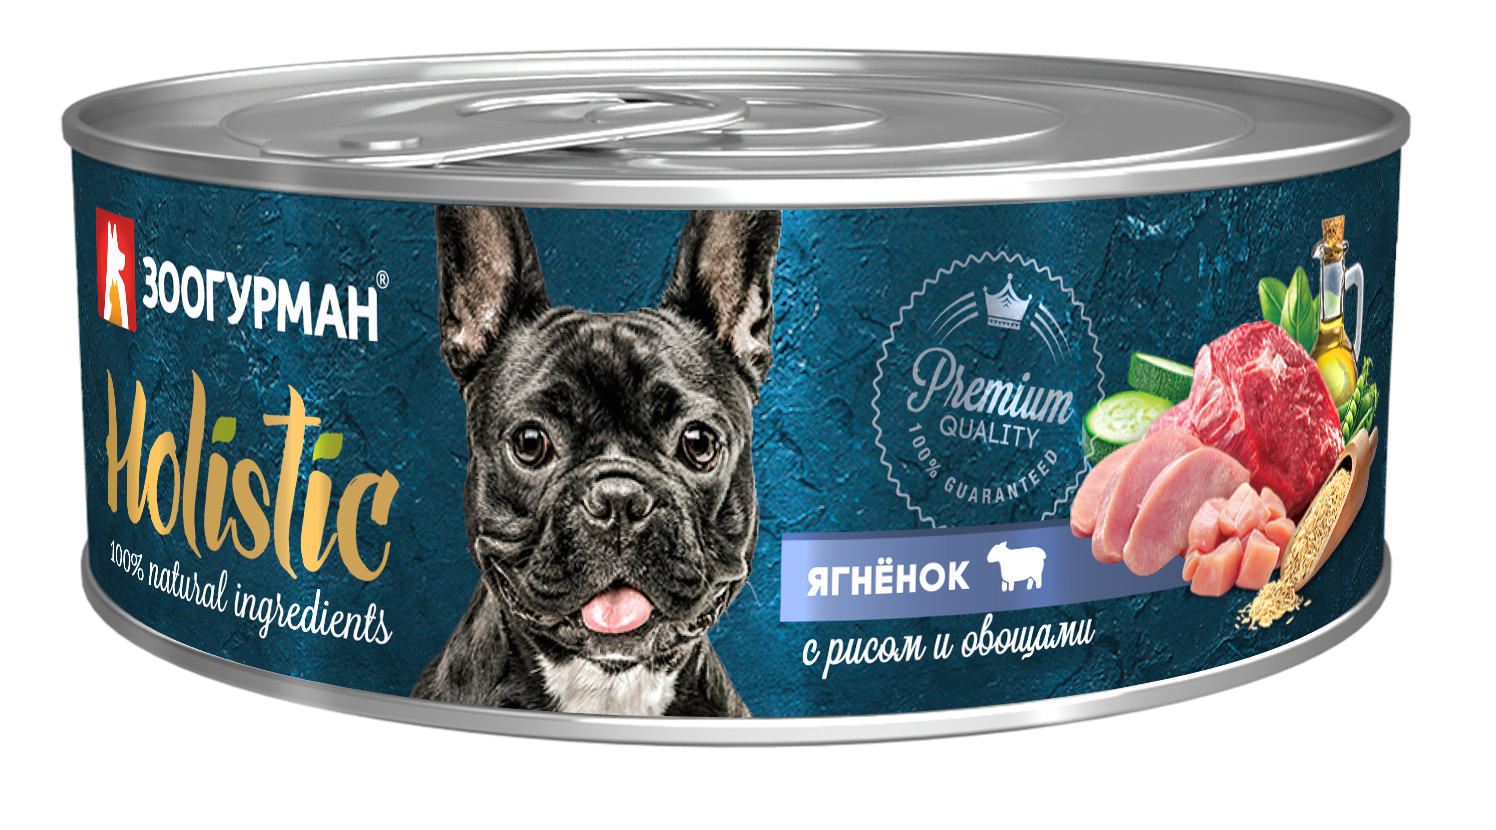 Зоогурман консервы Holistic 100г с ягненком, рисом, овощами для собак фото, цены, купить